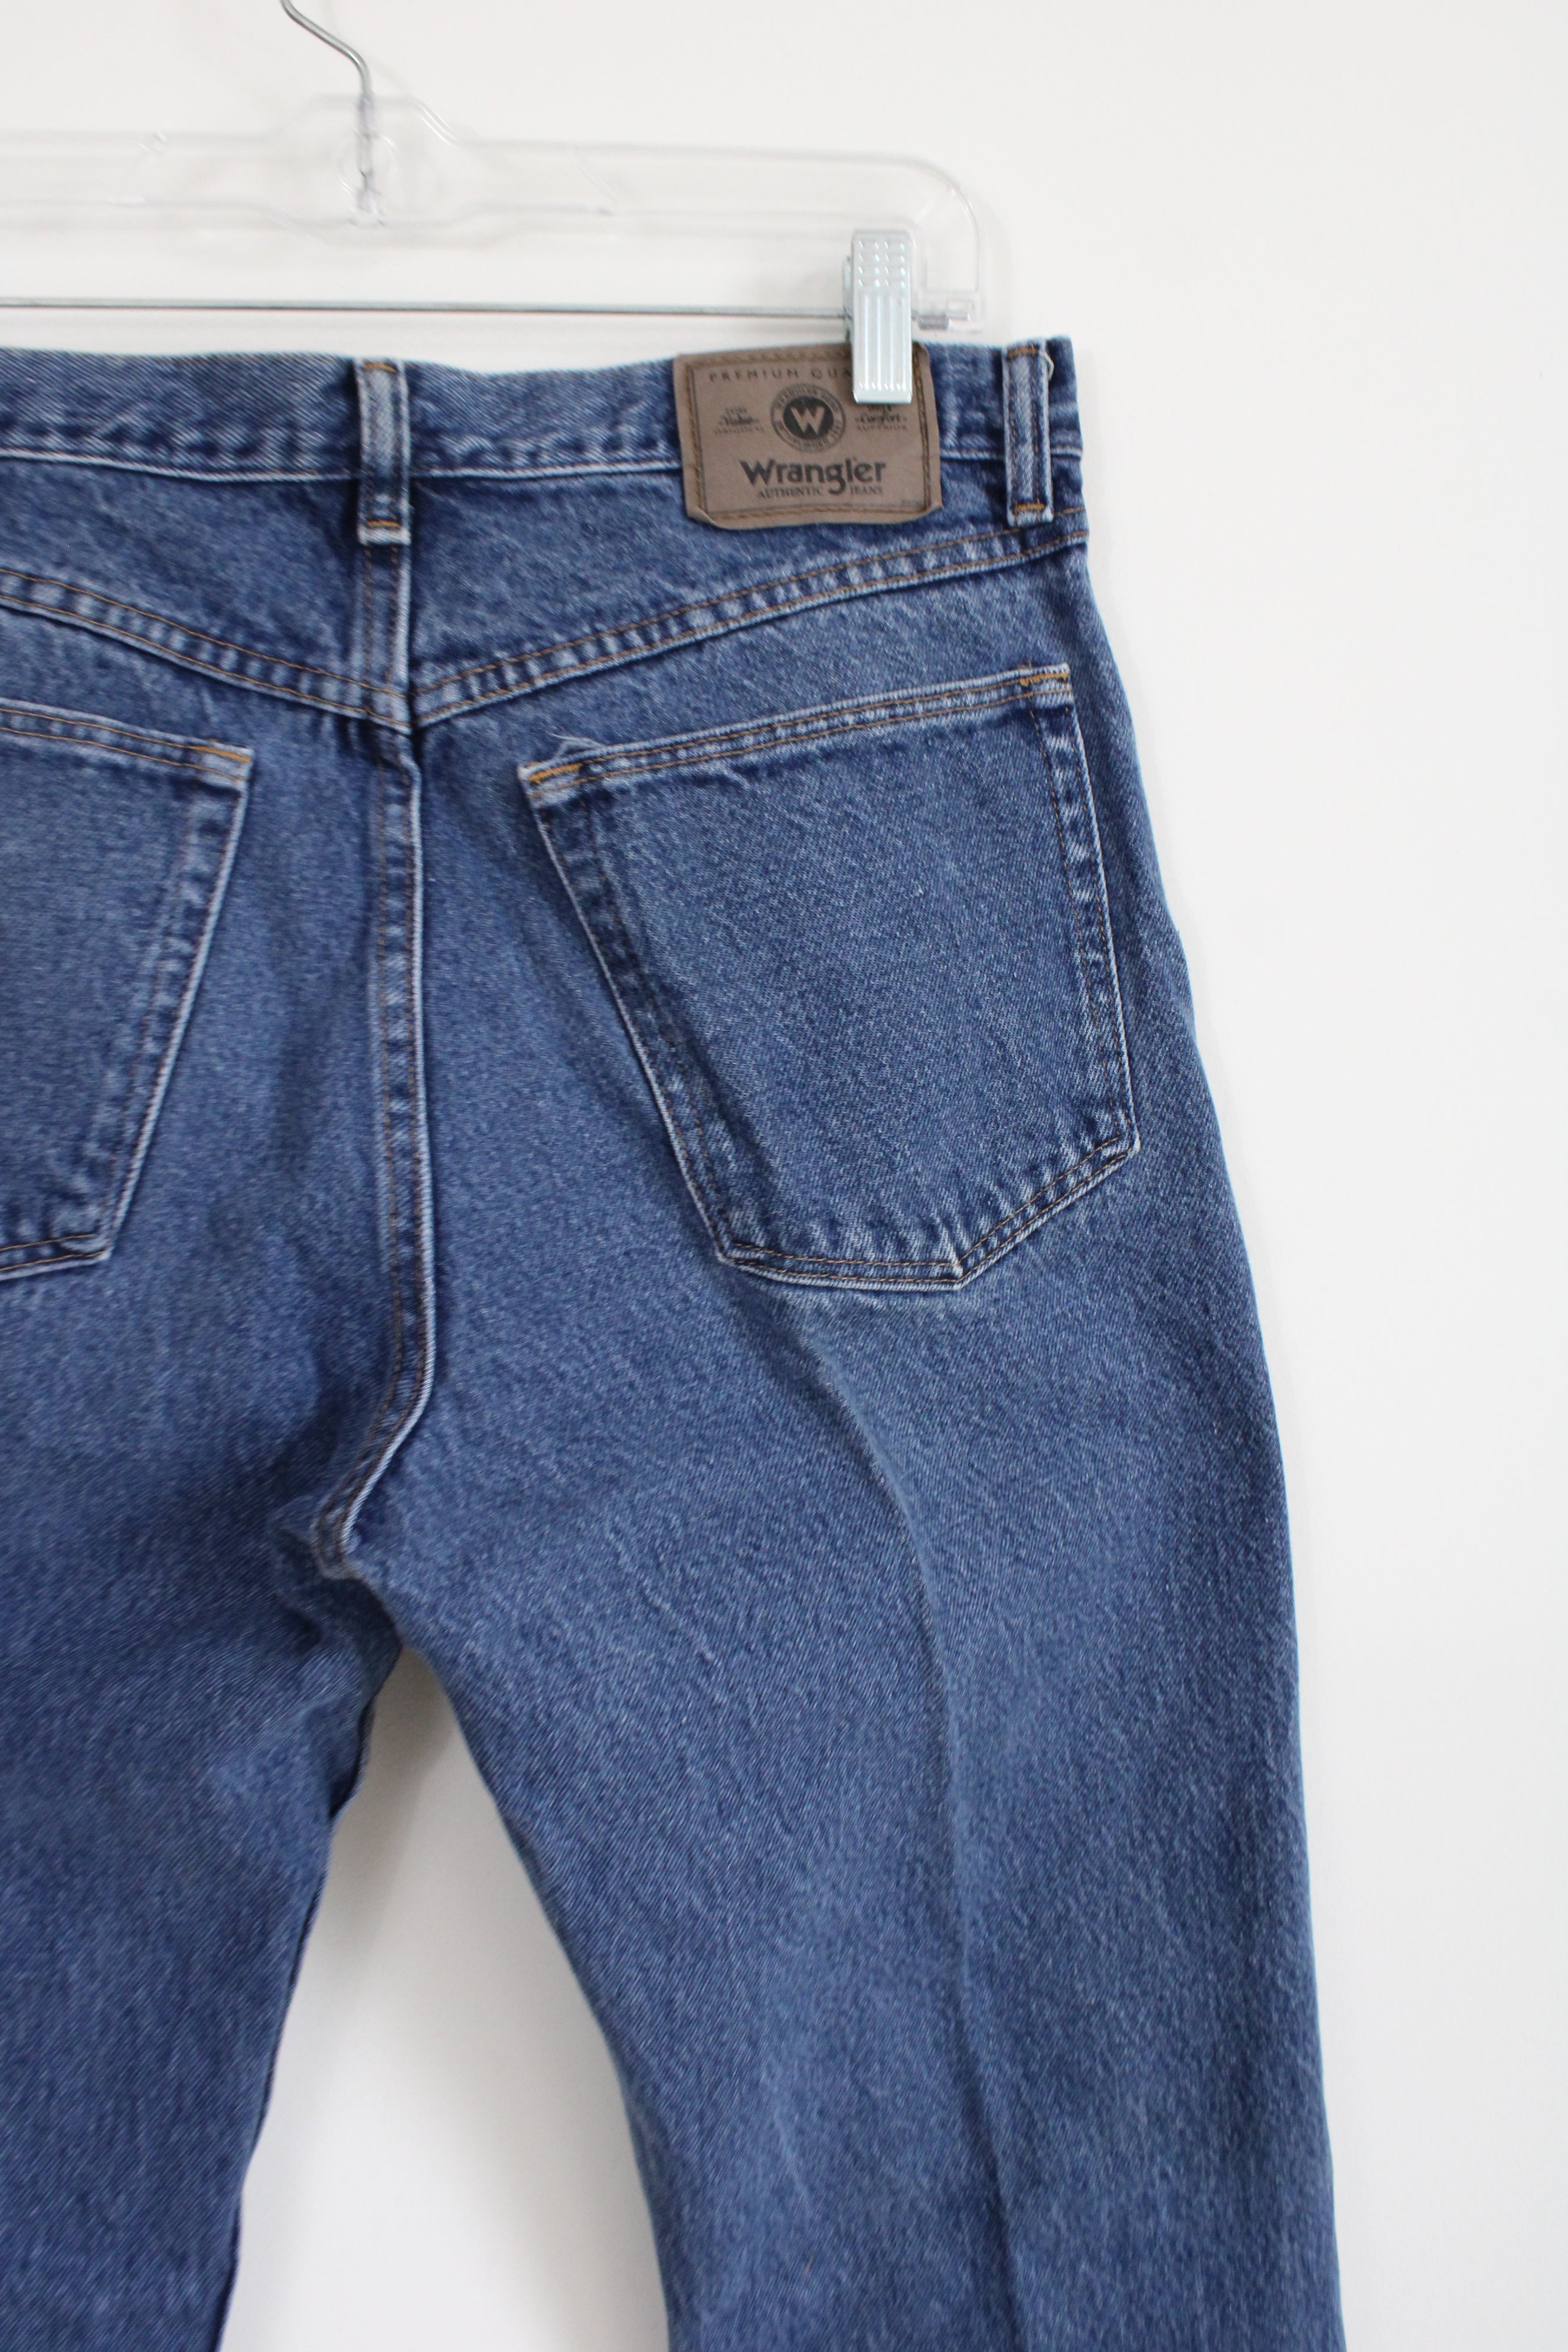 Wrangler Denim Jeans | 32X29